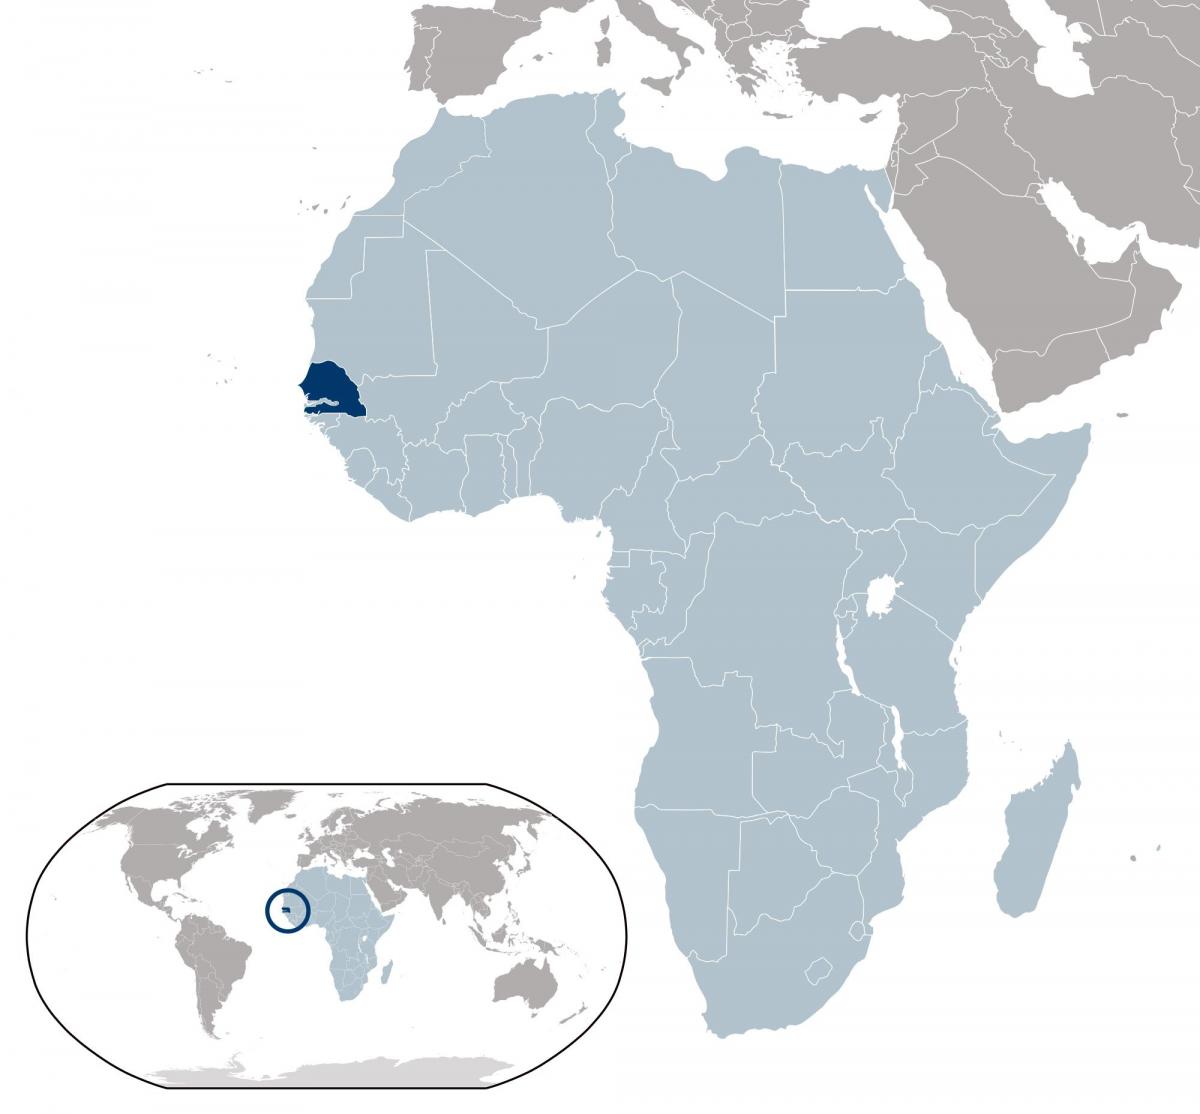 kort over Senegal placering på verden